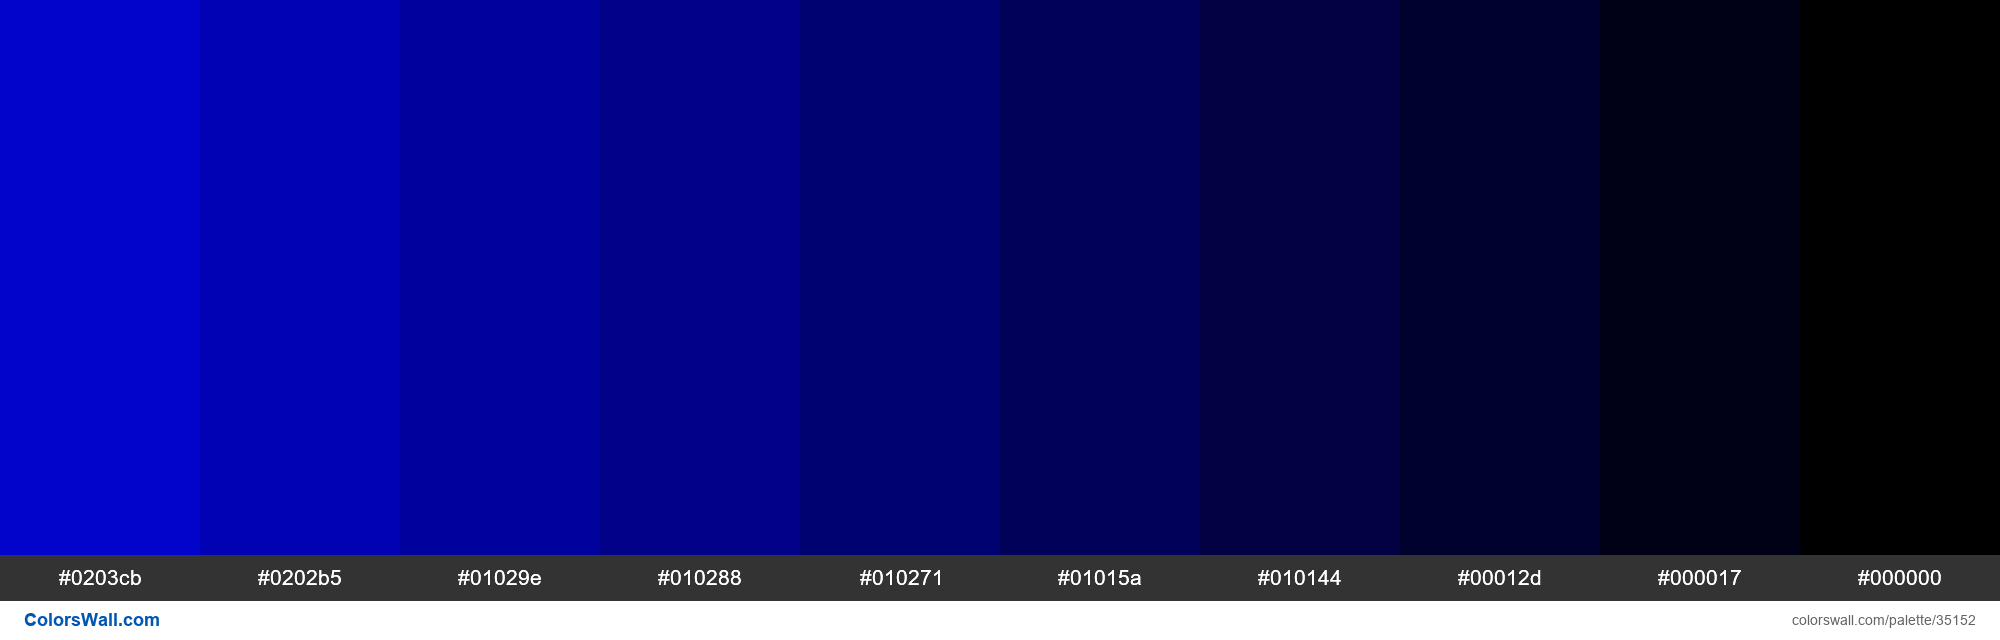 Shades XKCD Color pure blue #0203e2 hex colors palette | ColorsWall